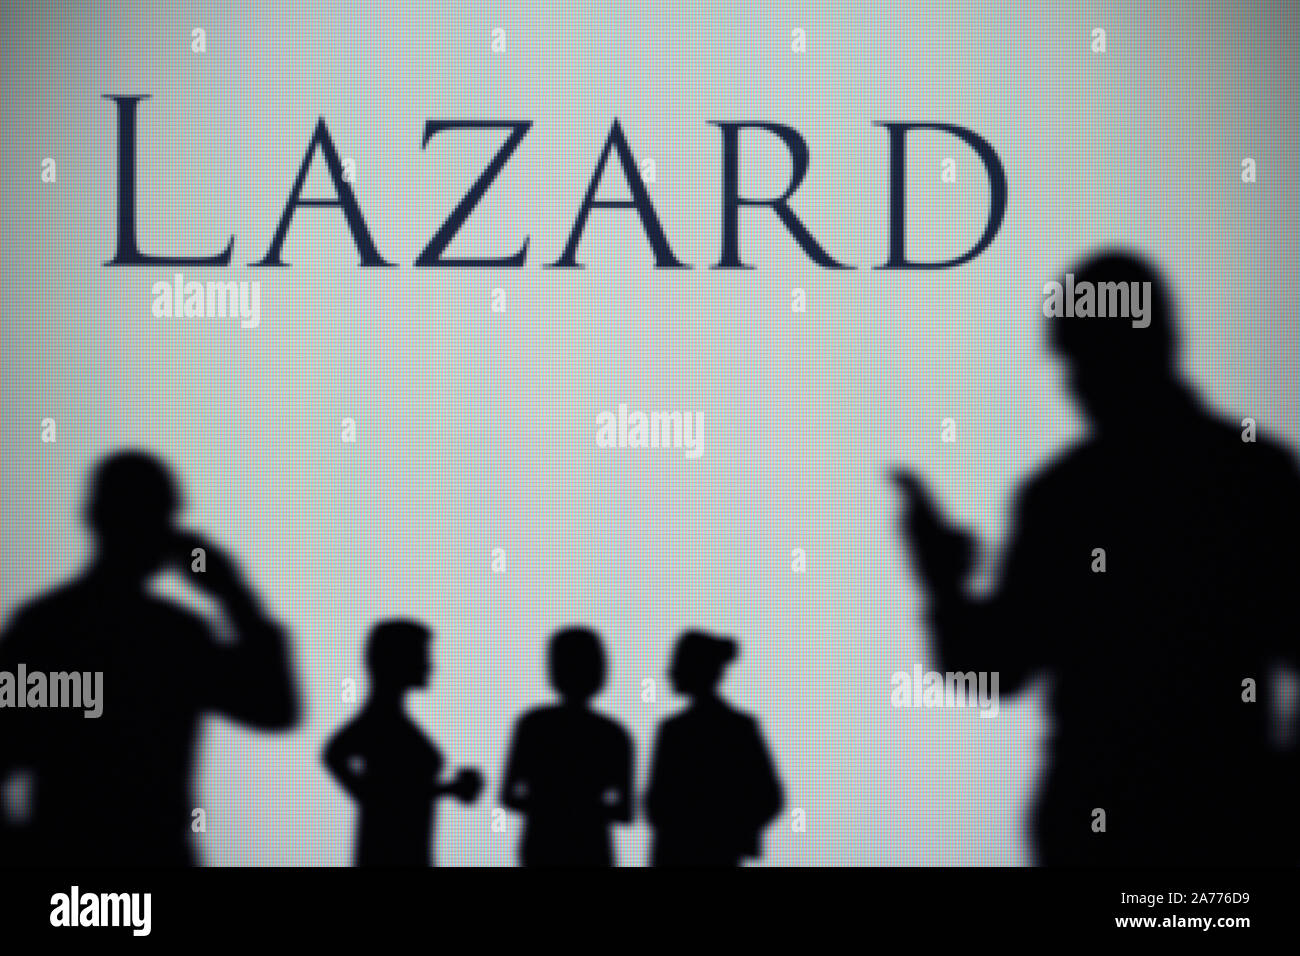 La Lazard asset management company logo è visibile su uno schermo a LED in background mentre si profila una persona utilizza uno smartphone (solo uso editoriale) Foto Stock